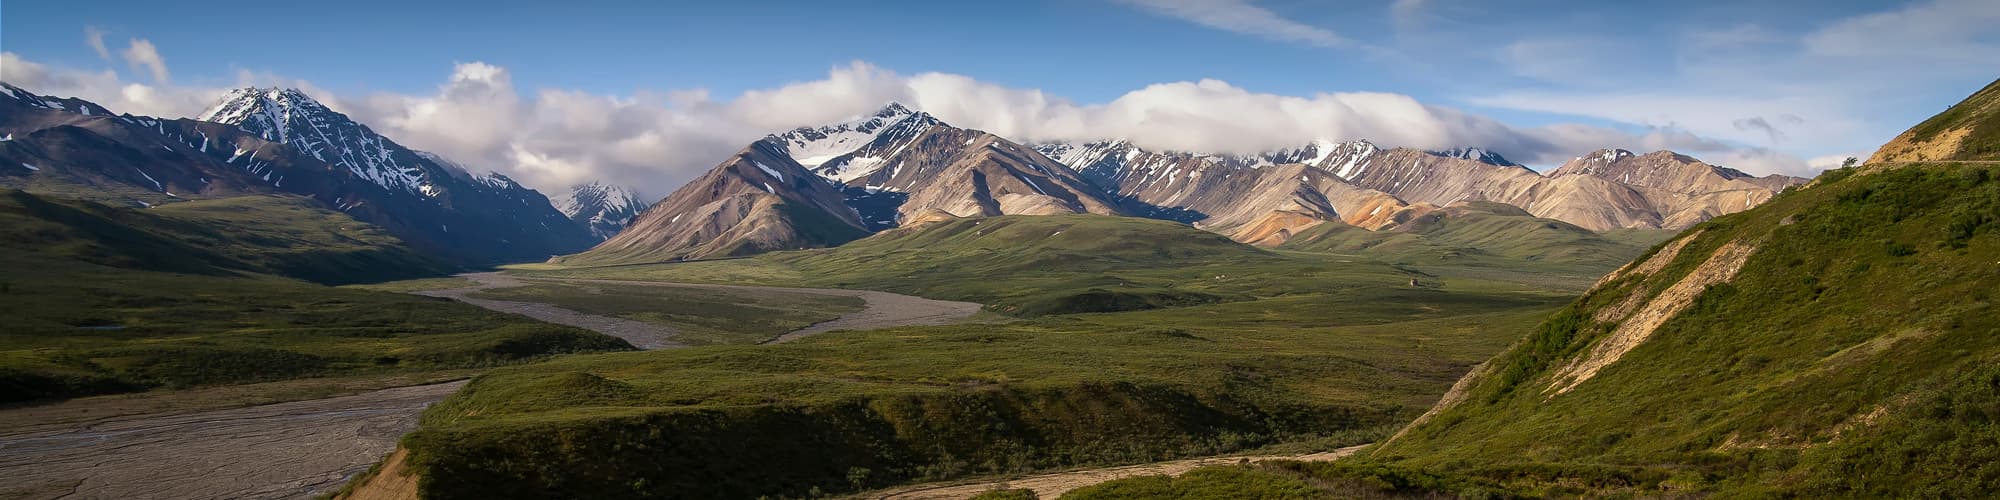 Découverte Alaska © Sschremp